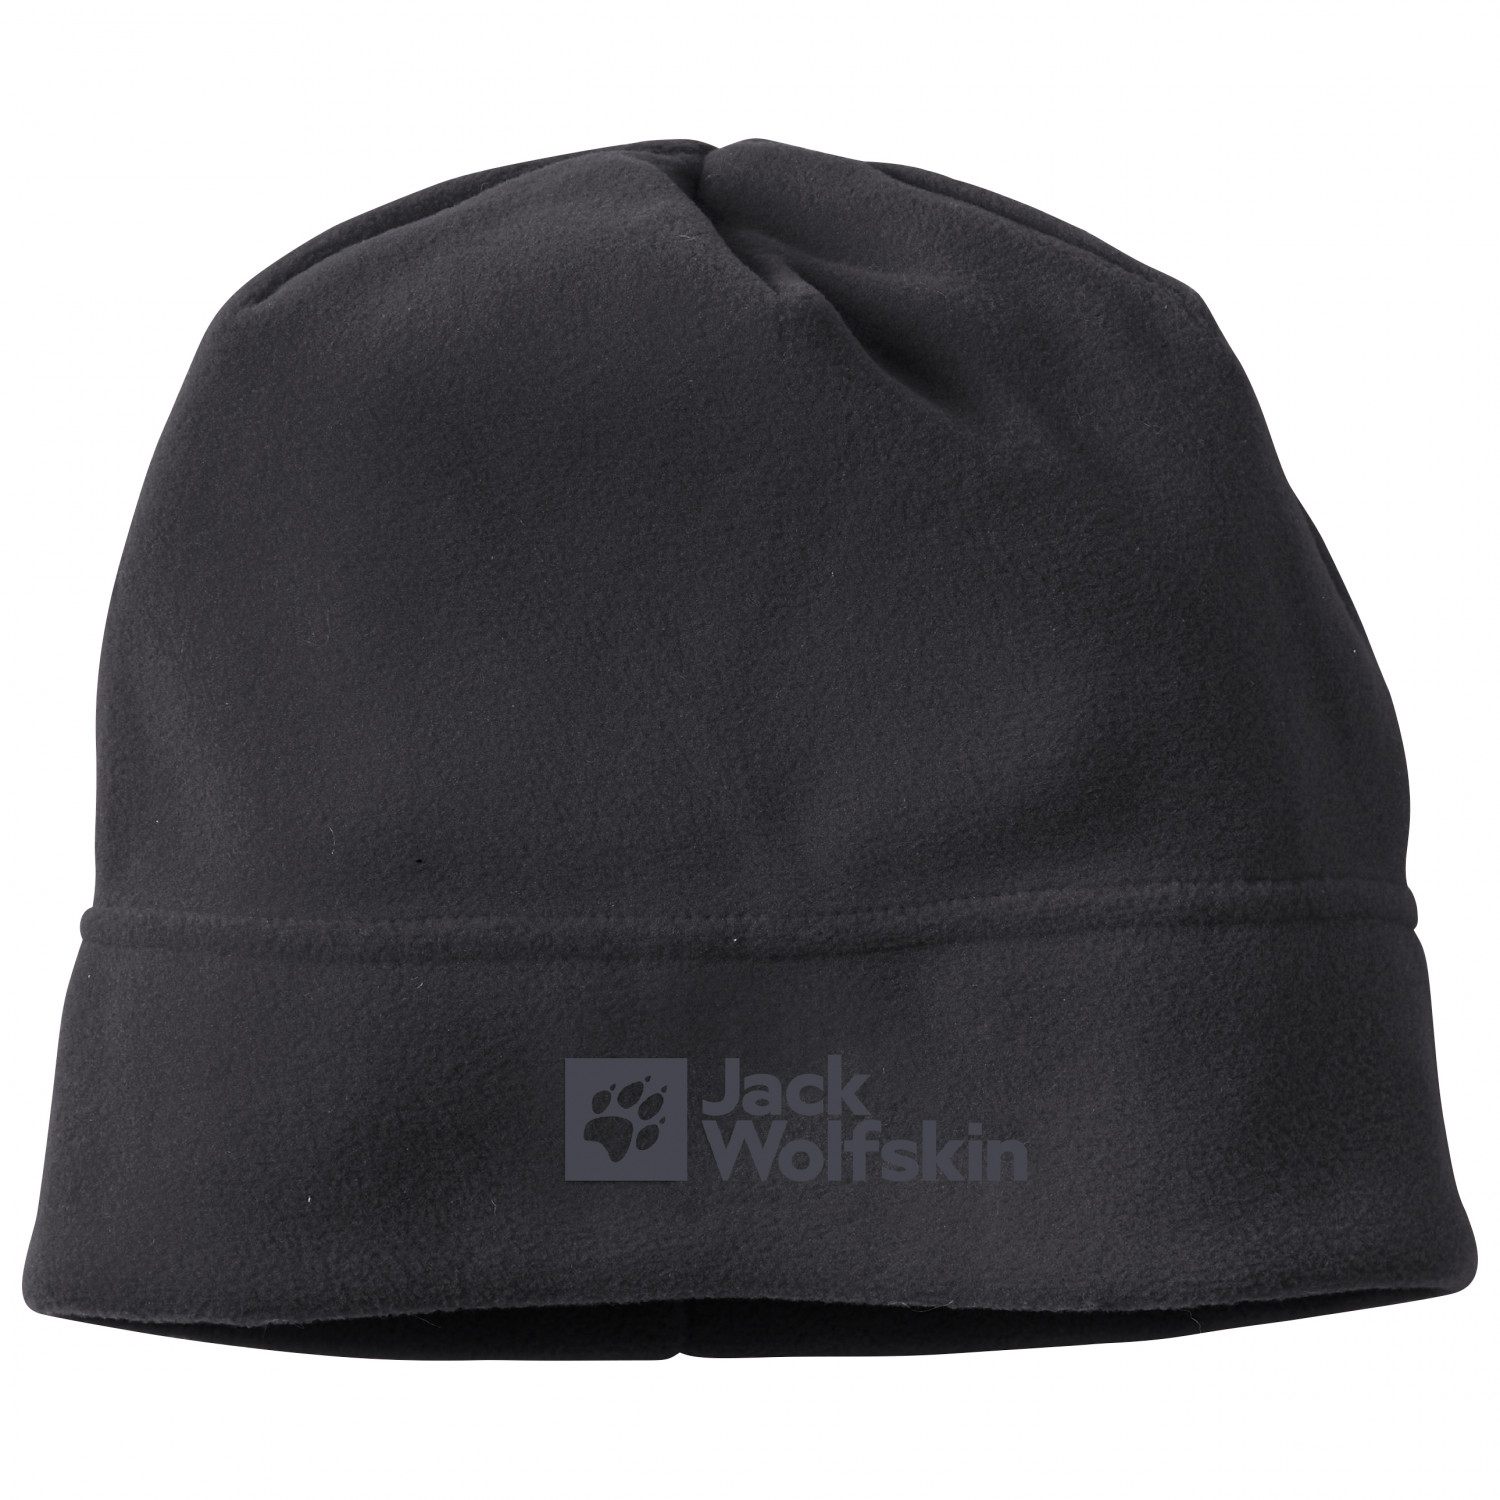 Кепка Jack Wolfskin Real Stuff Beanie, черный ангорская шапка зимняя женская вязаная шапка осенняя теплая однотонная лыжная шапка аксессуар для спорта на открытом воздухе